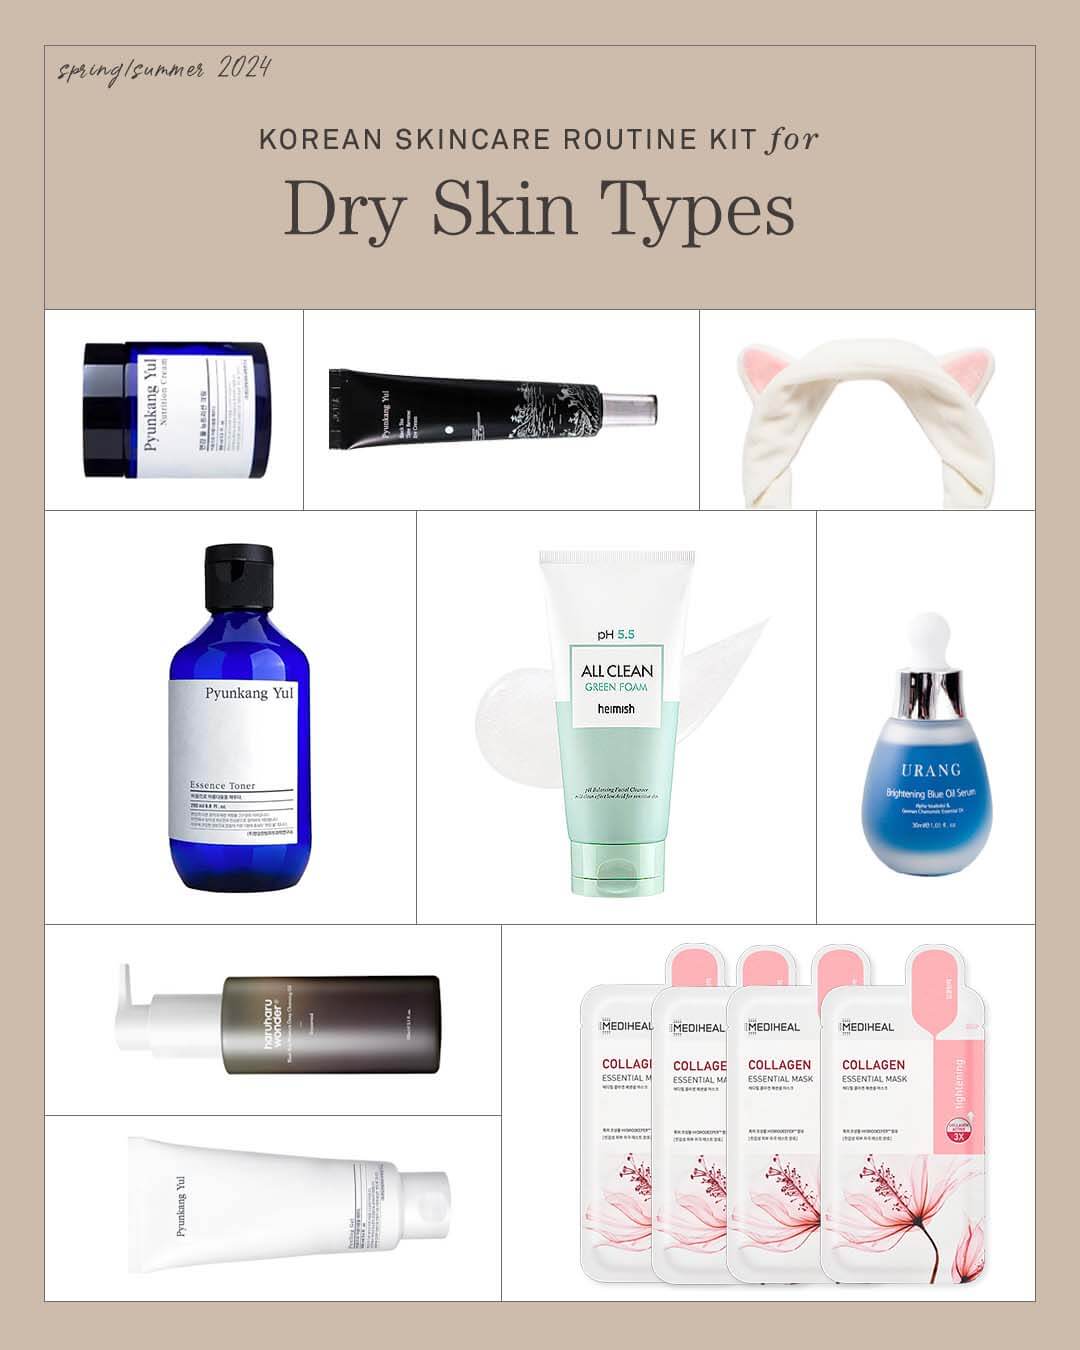 Ohlolly Korean Skincare Kit for Dry Skin Types